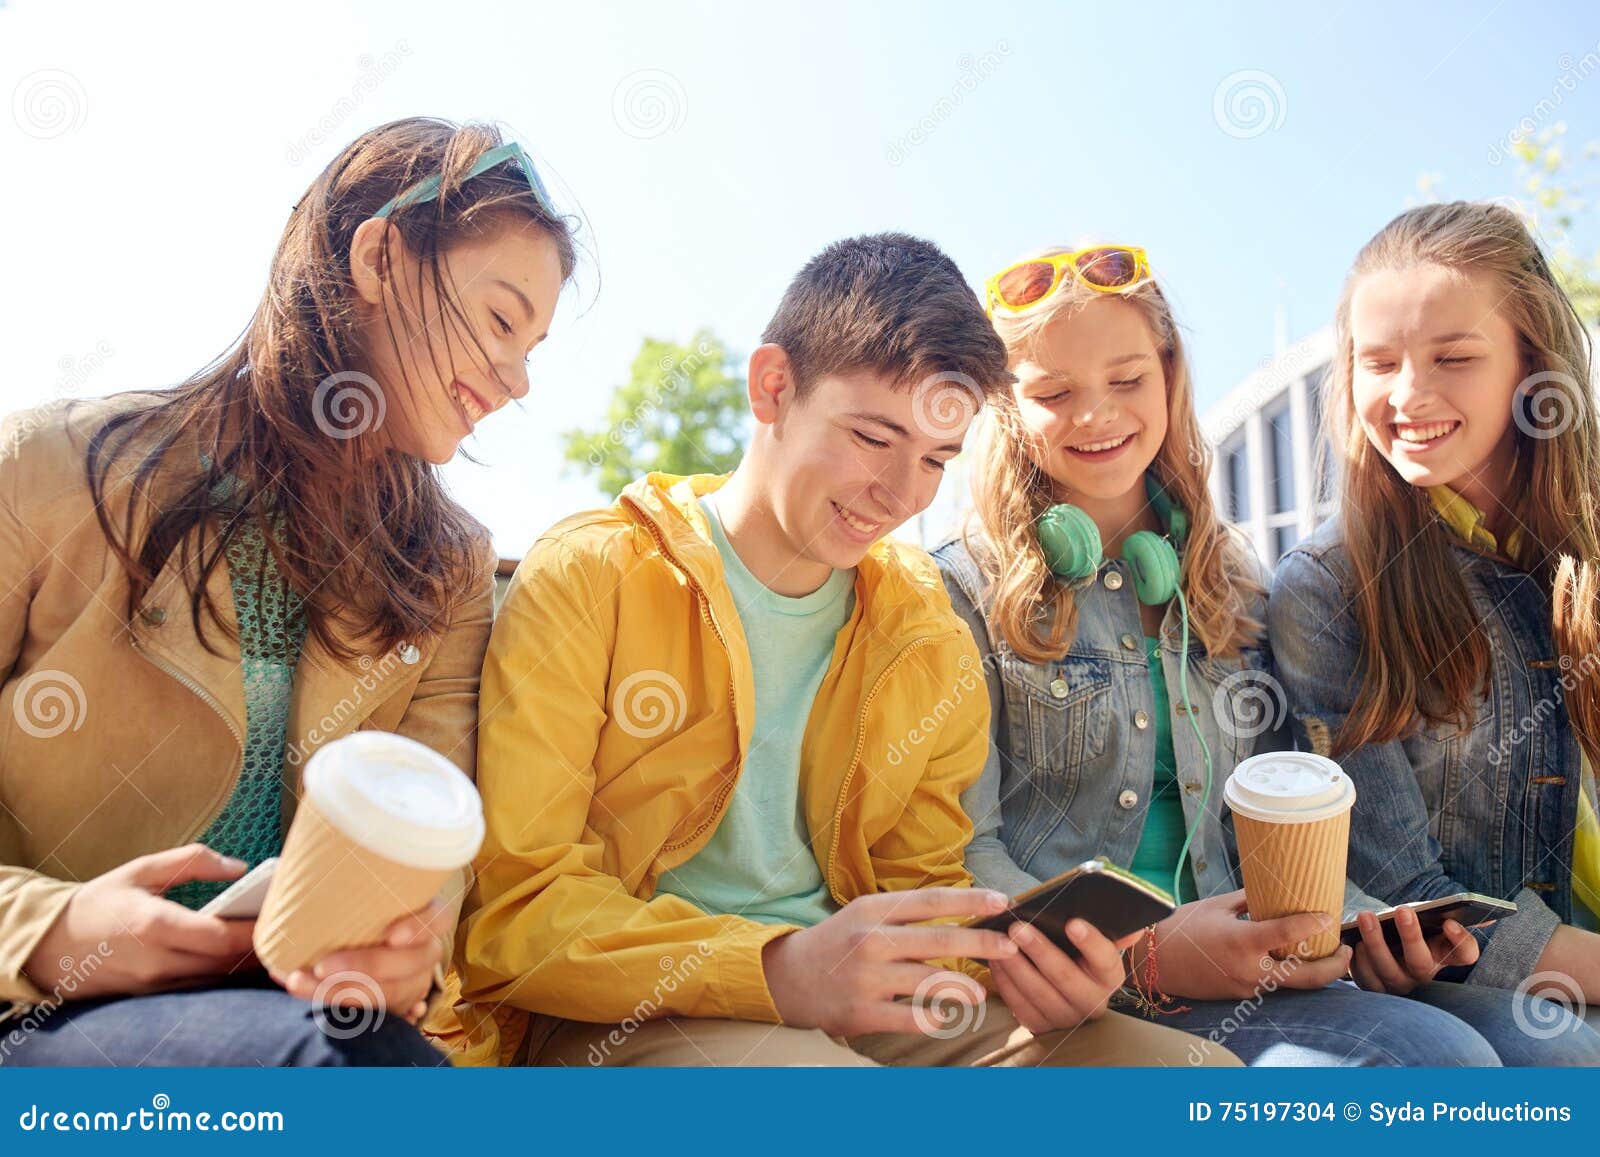 Можно подросткам пить кофе. Подростки пьют кофе. Подростки пьют чай. Студент с кофе. Фотография подростков пьющих кофе.